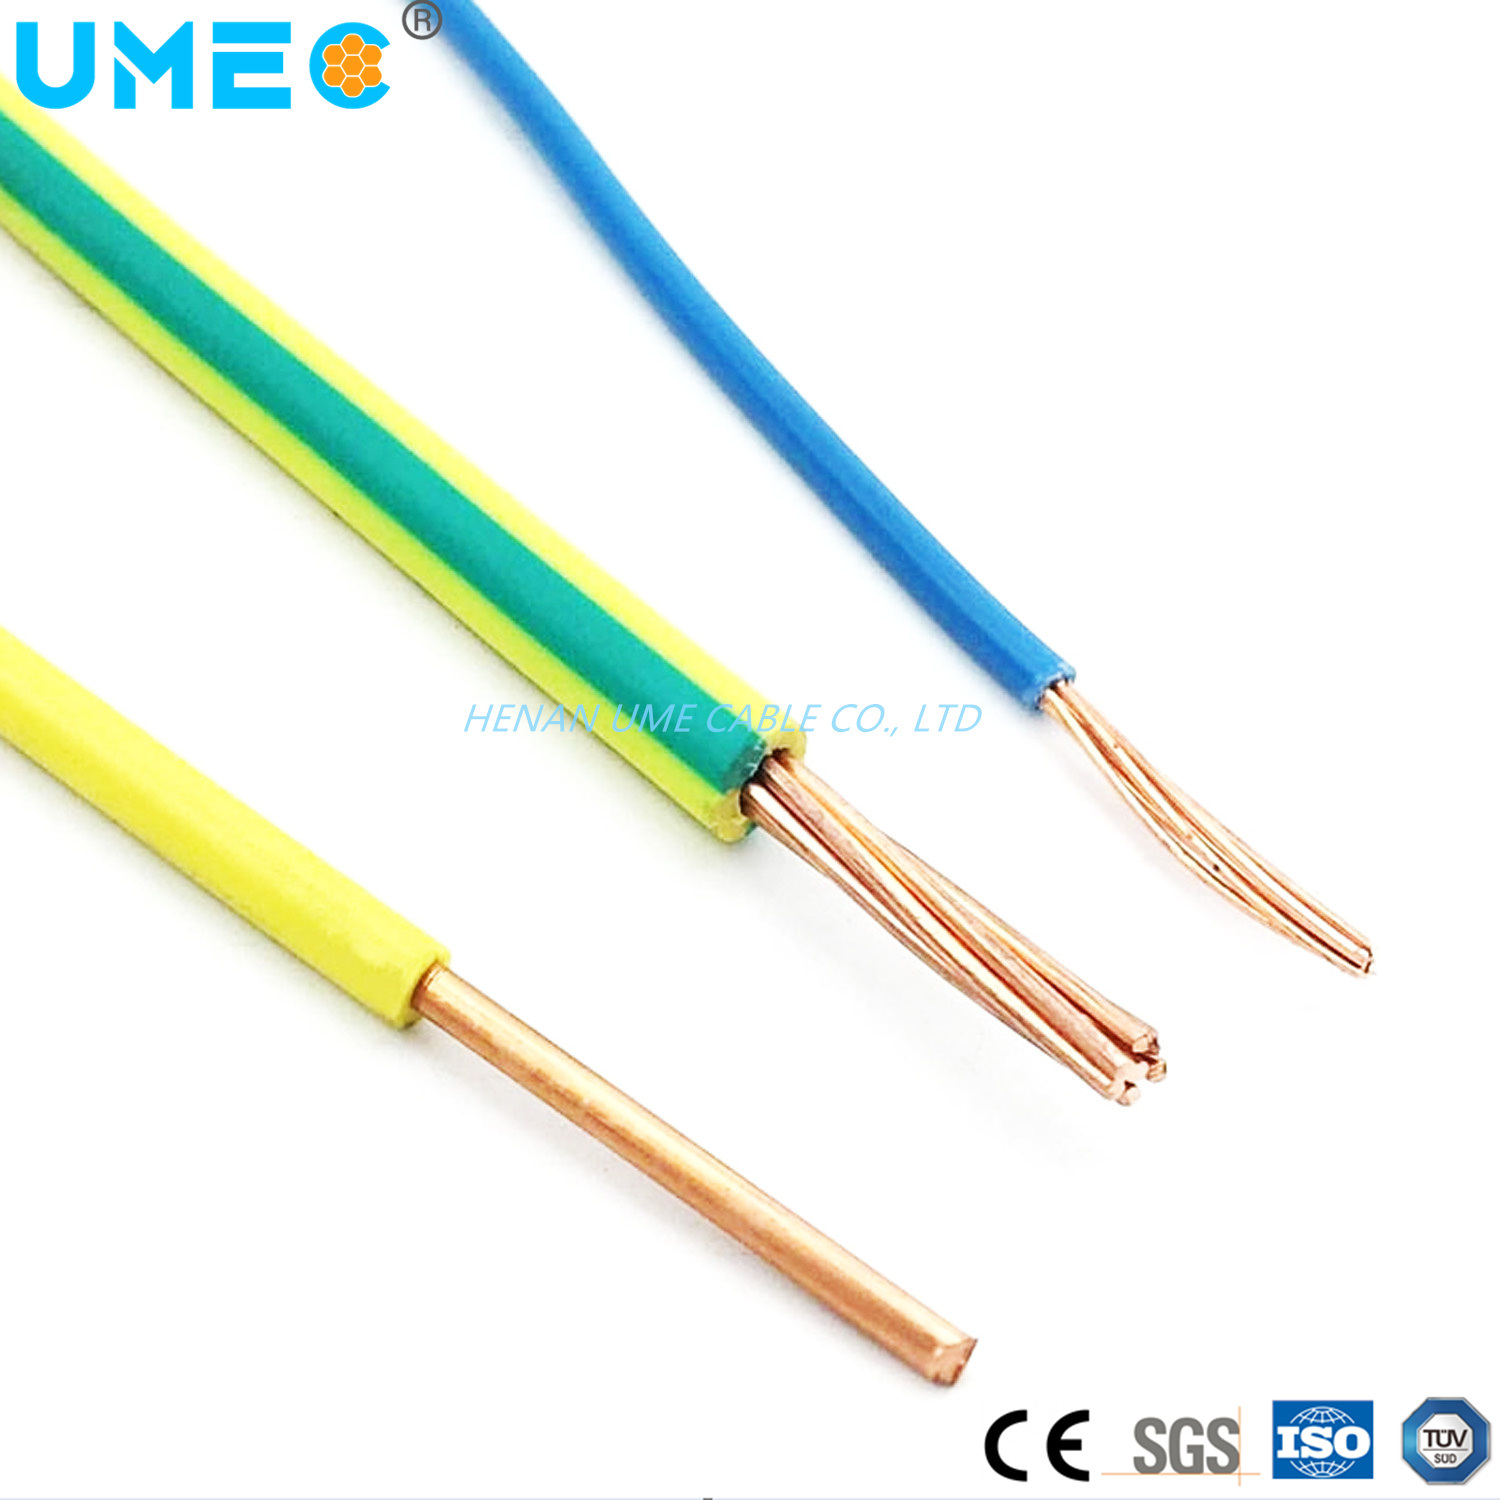 Electrical Lead Wire 450/750V H07V-U H07V-R H07V-K 10mm2 16mm2 Flexible Copper Cable